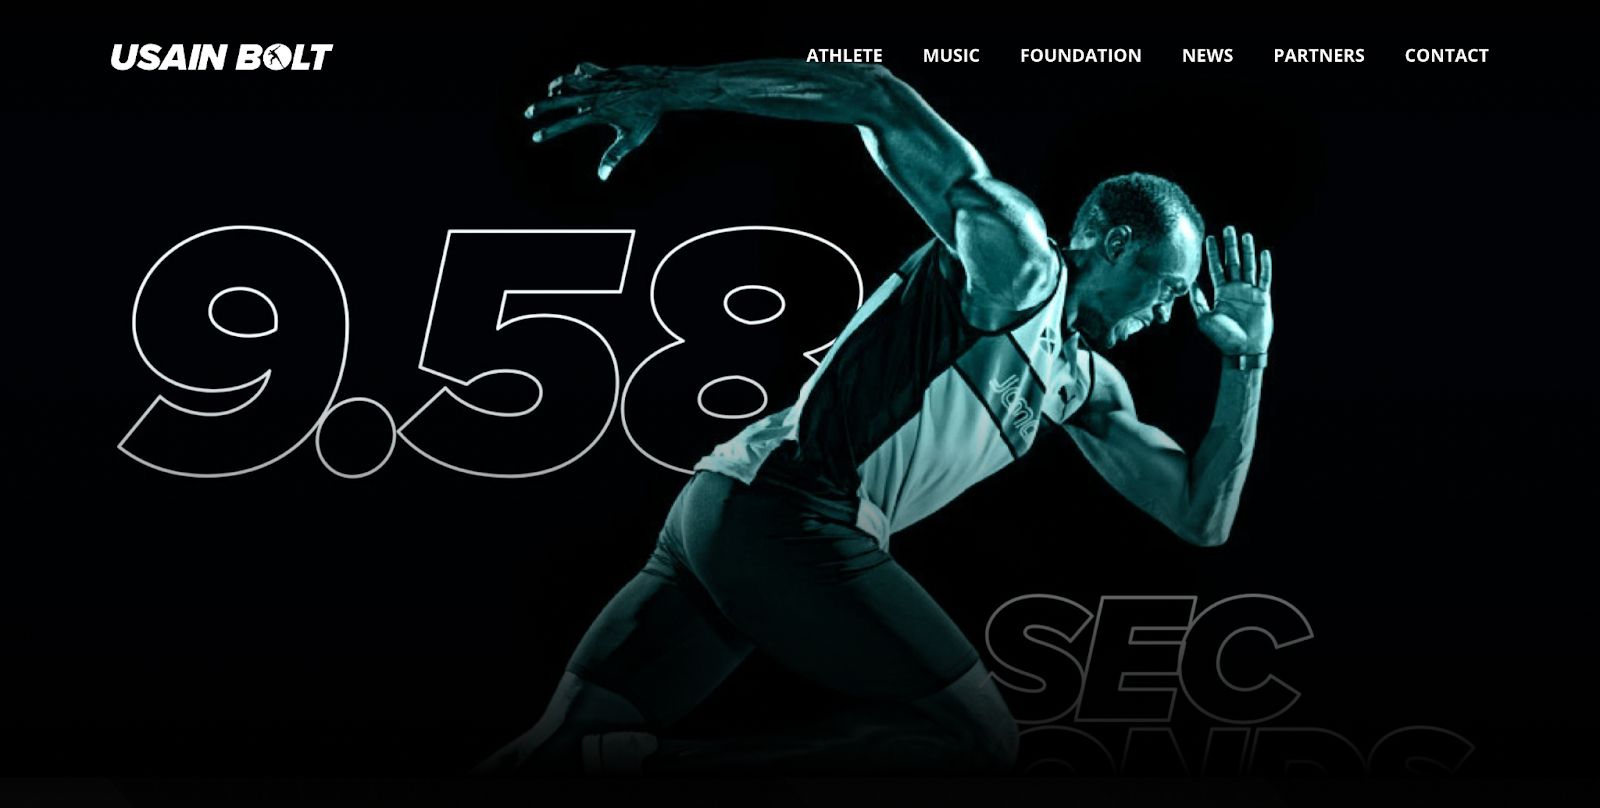 A screenshot from the Usain Bolt website